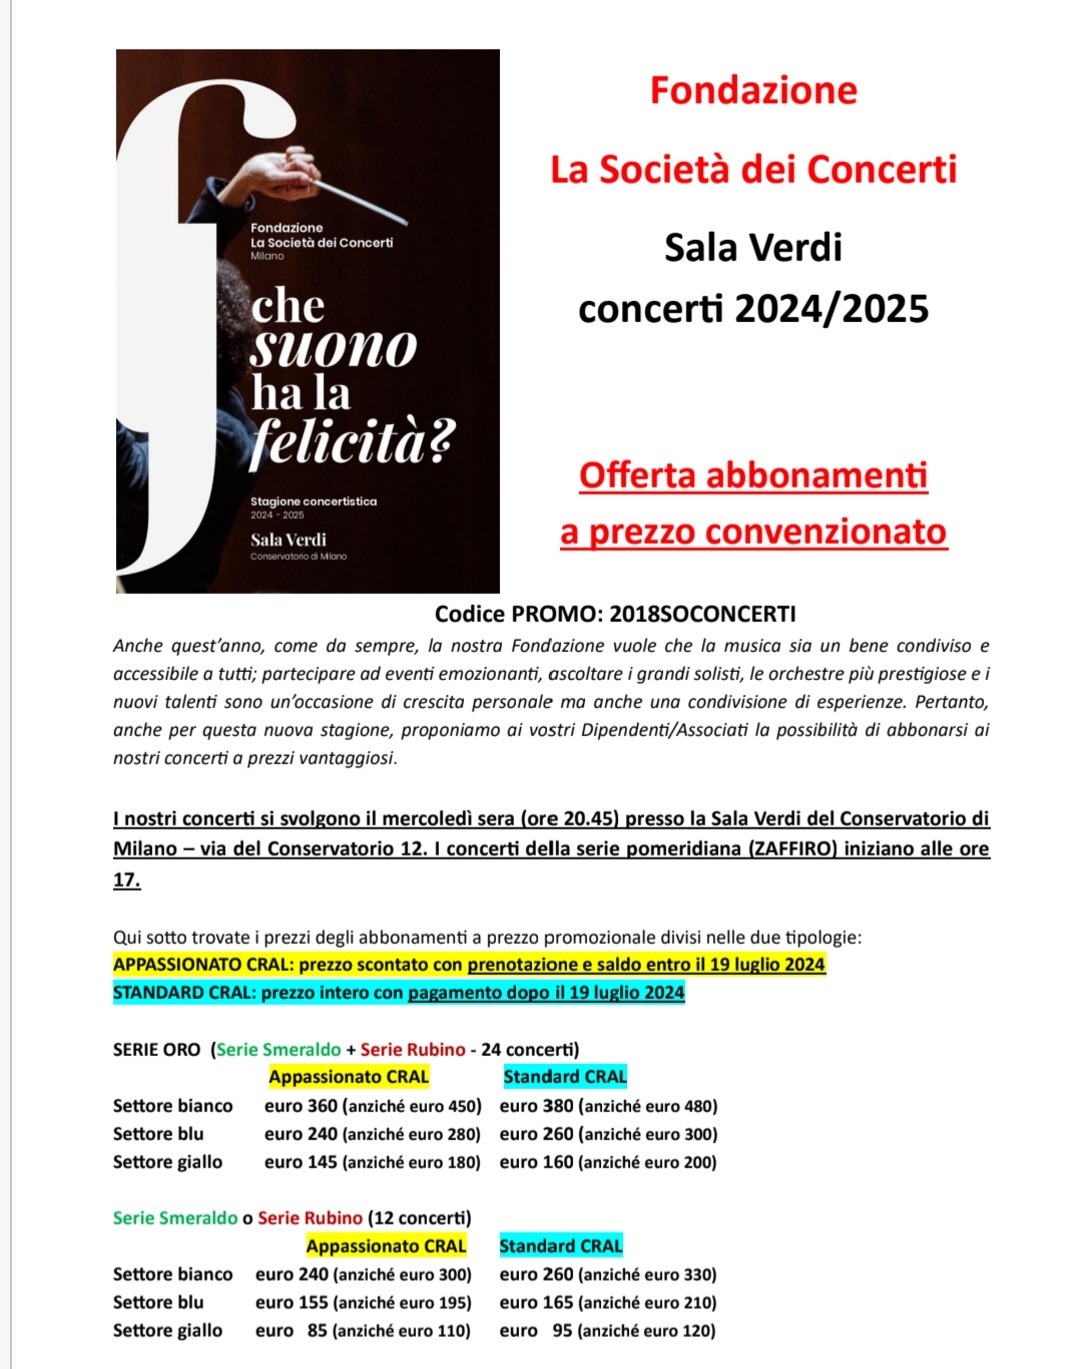 LA SOCIETÀ DEI CONCERTI. Il Conservatorio di Milano 